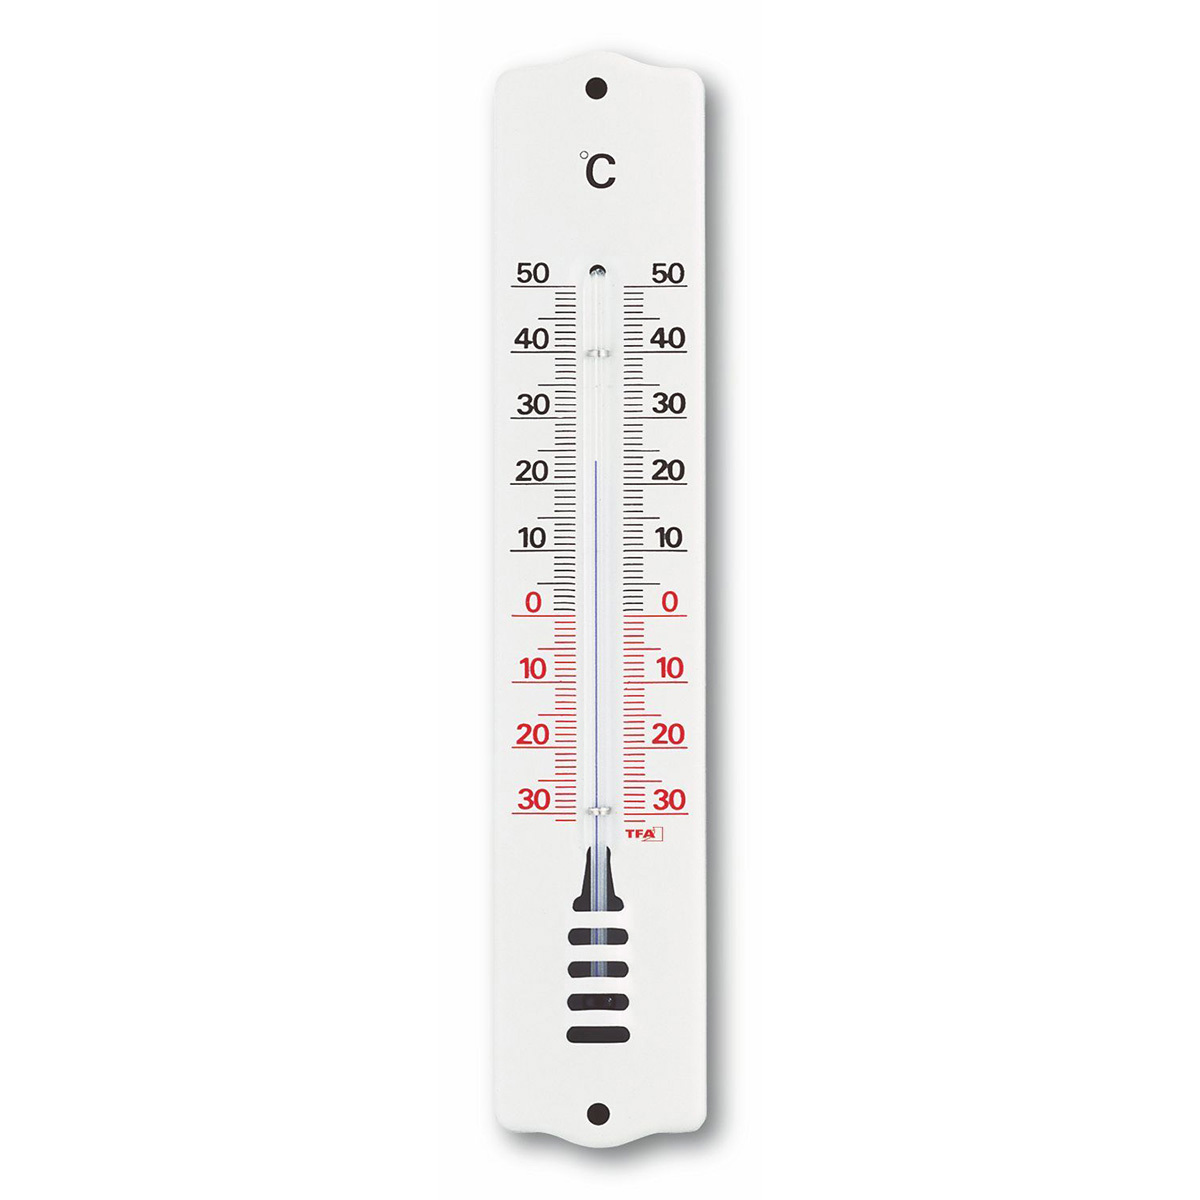 95-1032-innen-aussen-thermometer-1200x1200px.jpg